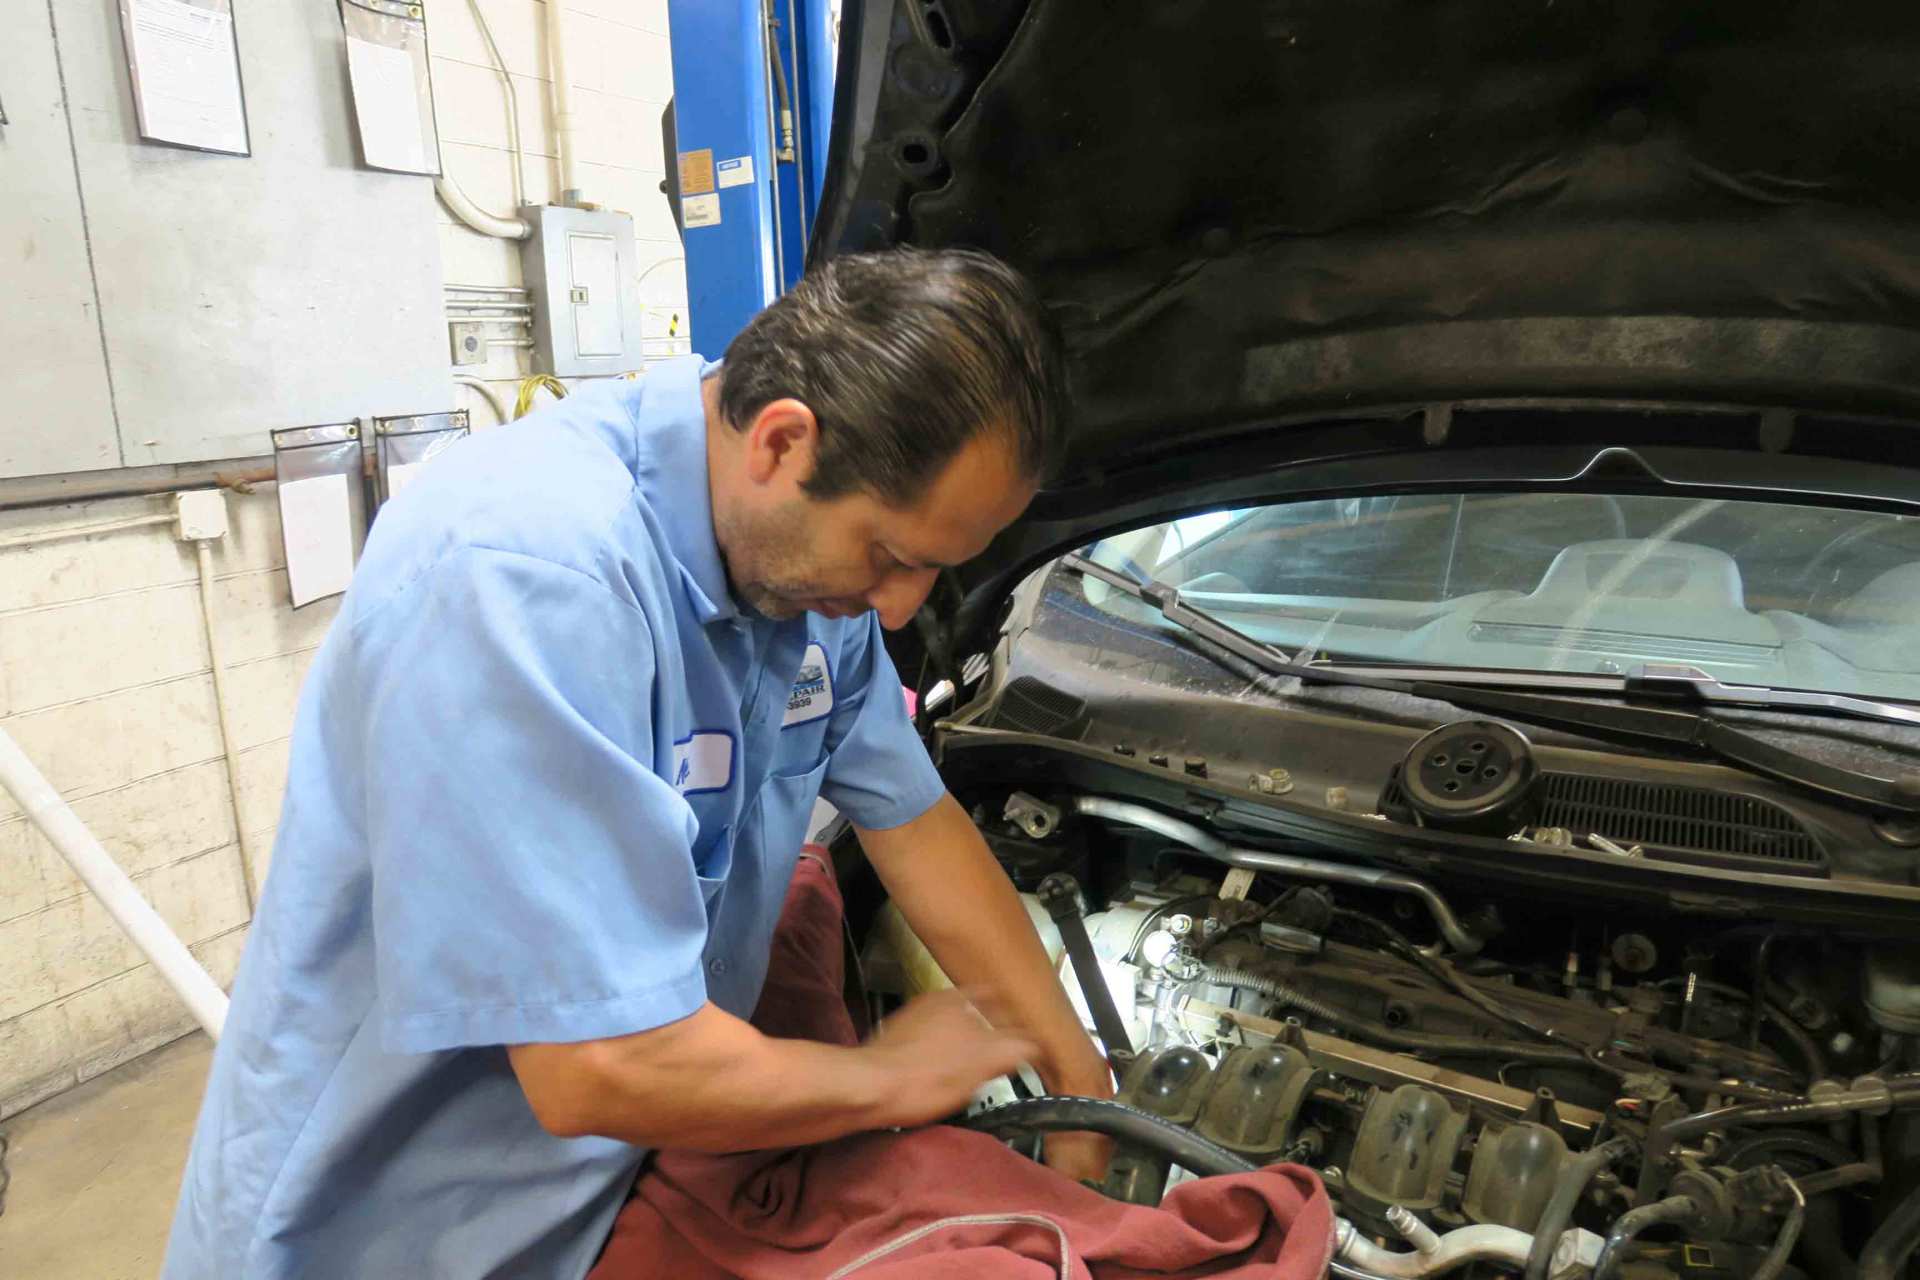 Tire Repair — Auto Mechanic Fixing Car Engine in Ontario, California